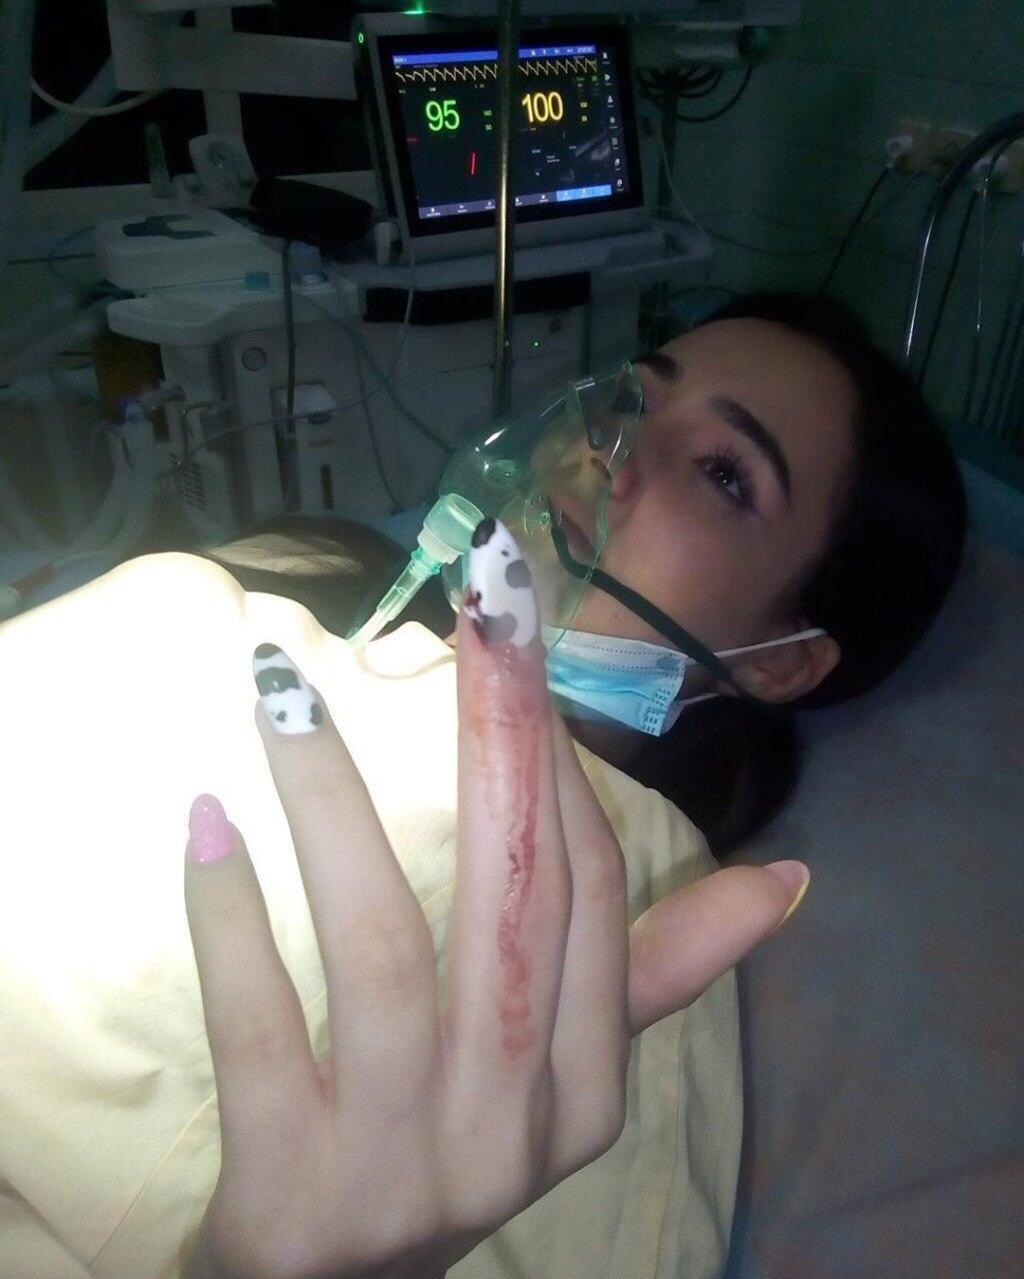 Анна Тринчер показала окровавленный палец и рассказала, что произошло (Instagram Анны Тринчер)